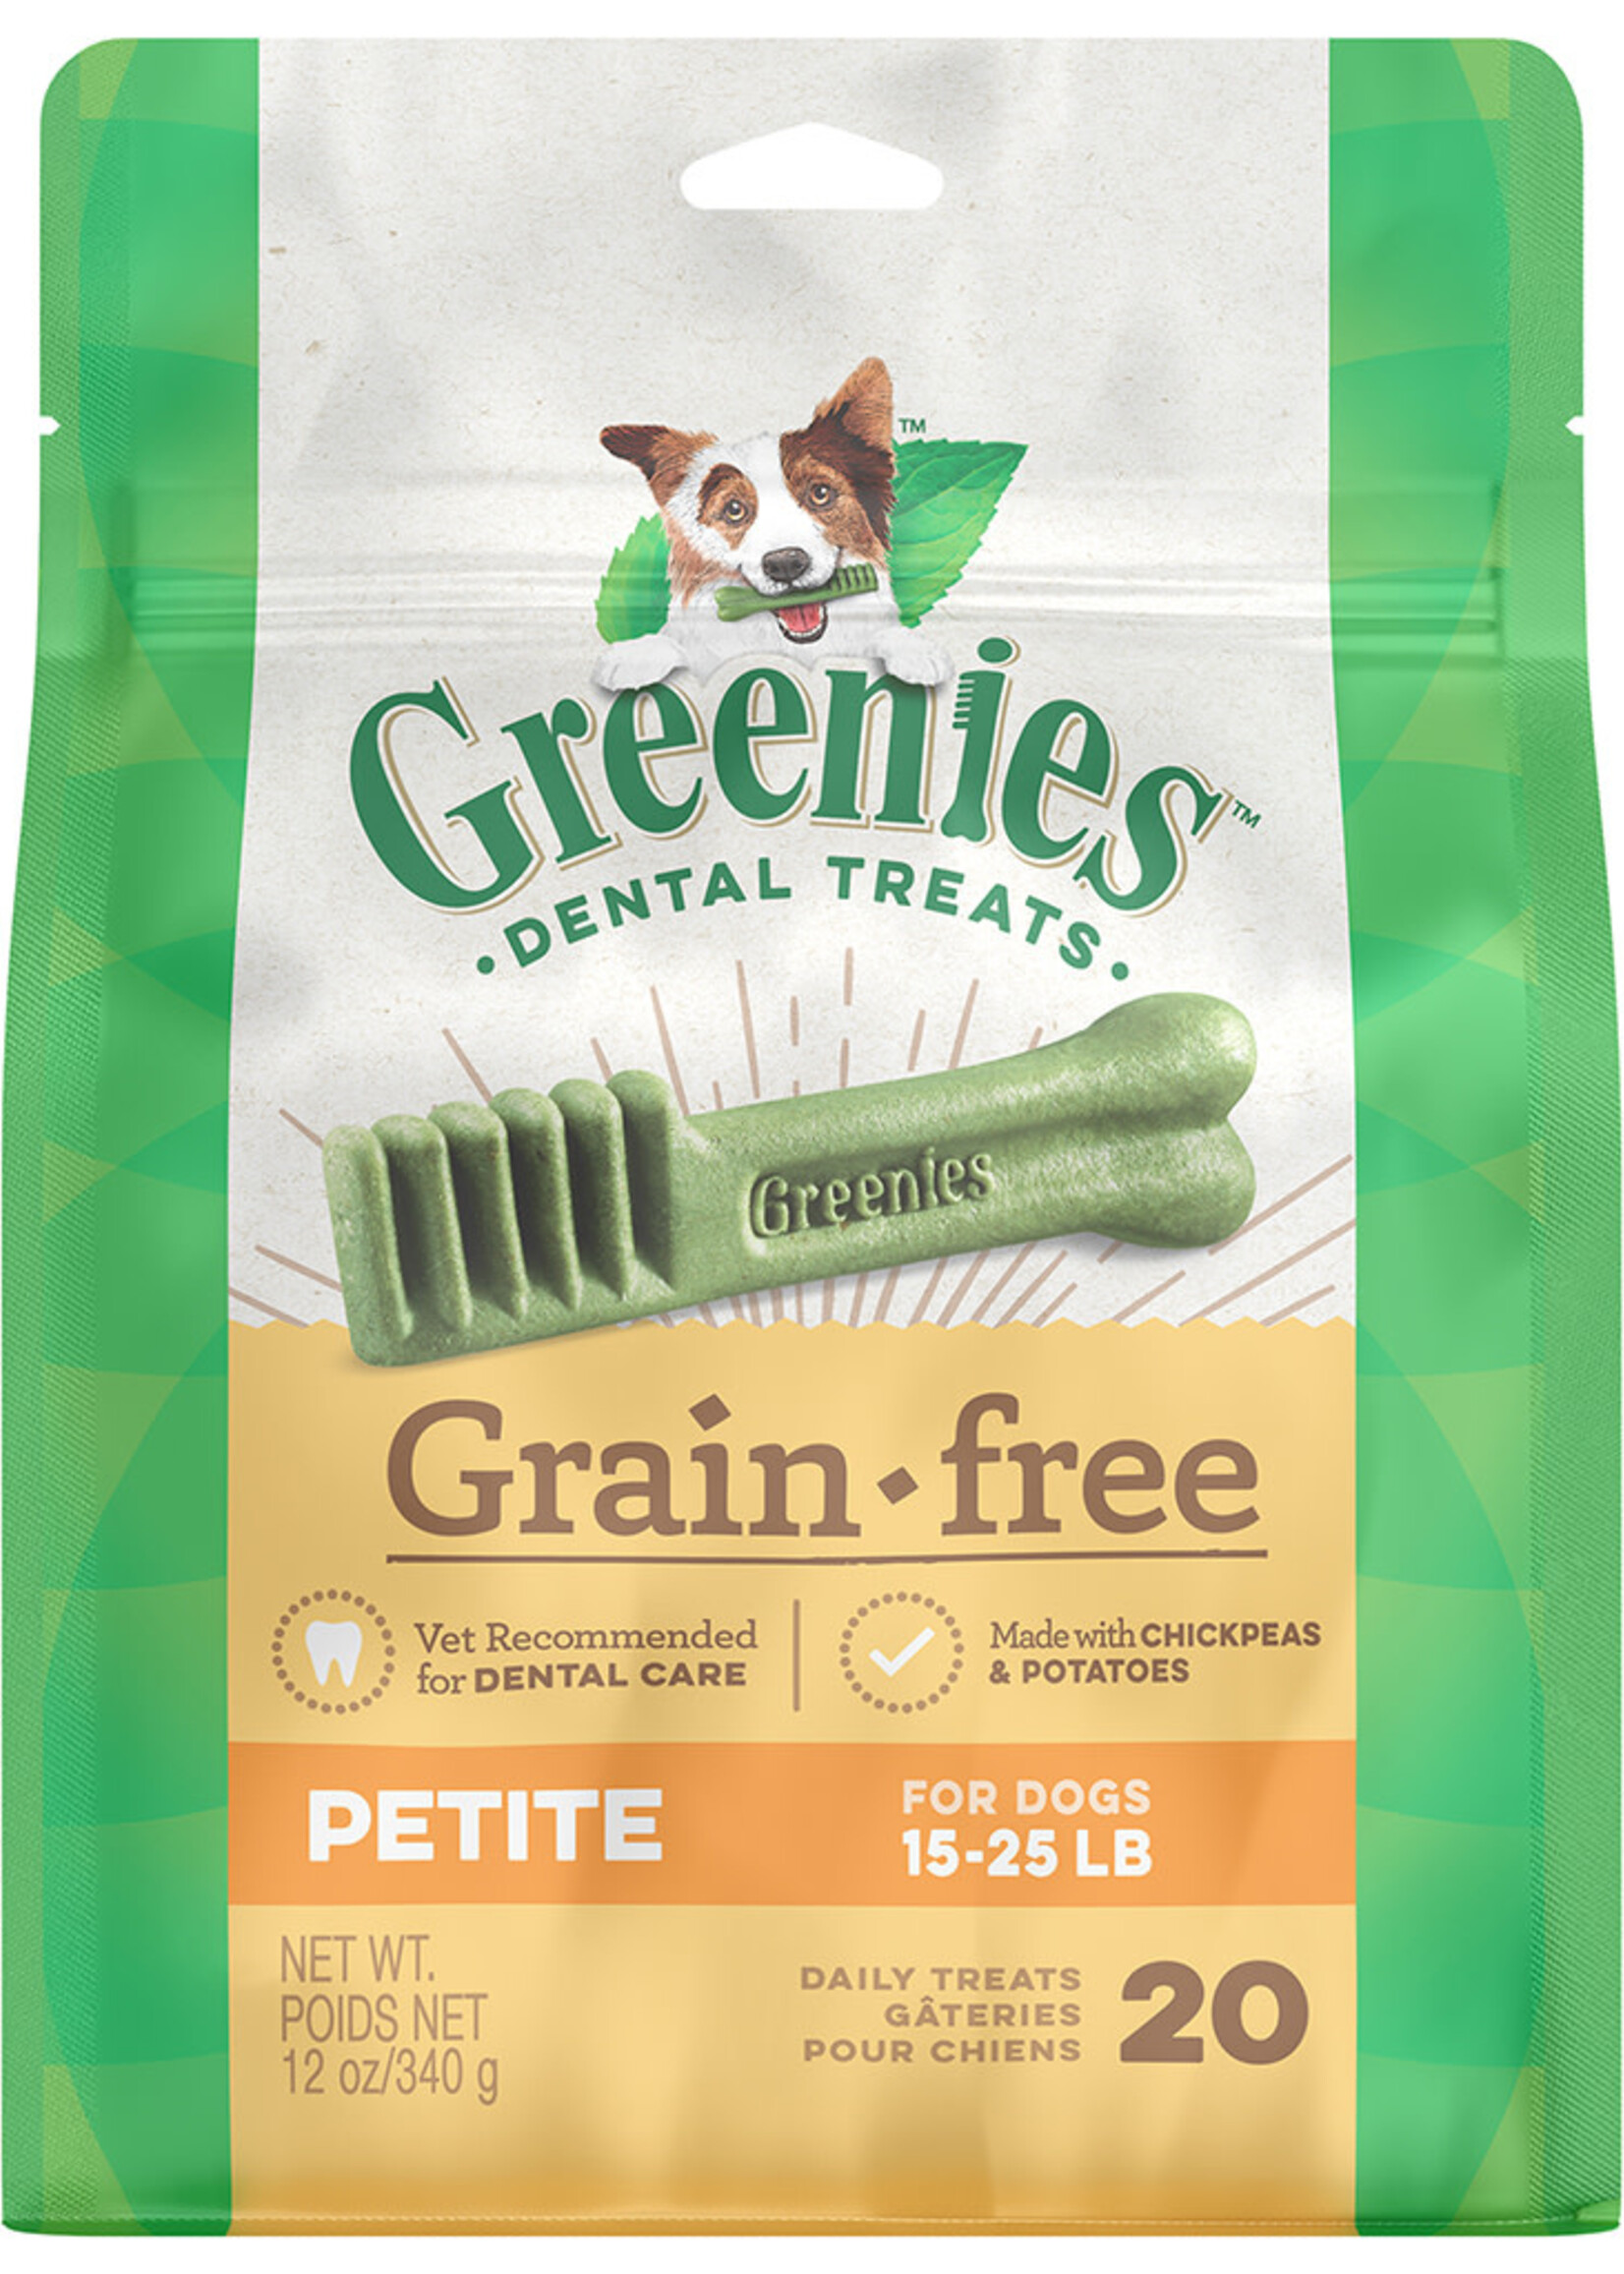 Greenies Grain Free Petite 20CT / 12OZ